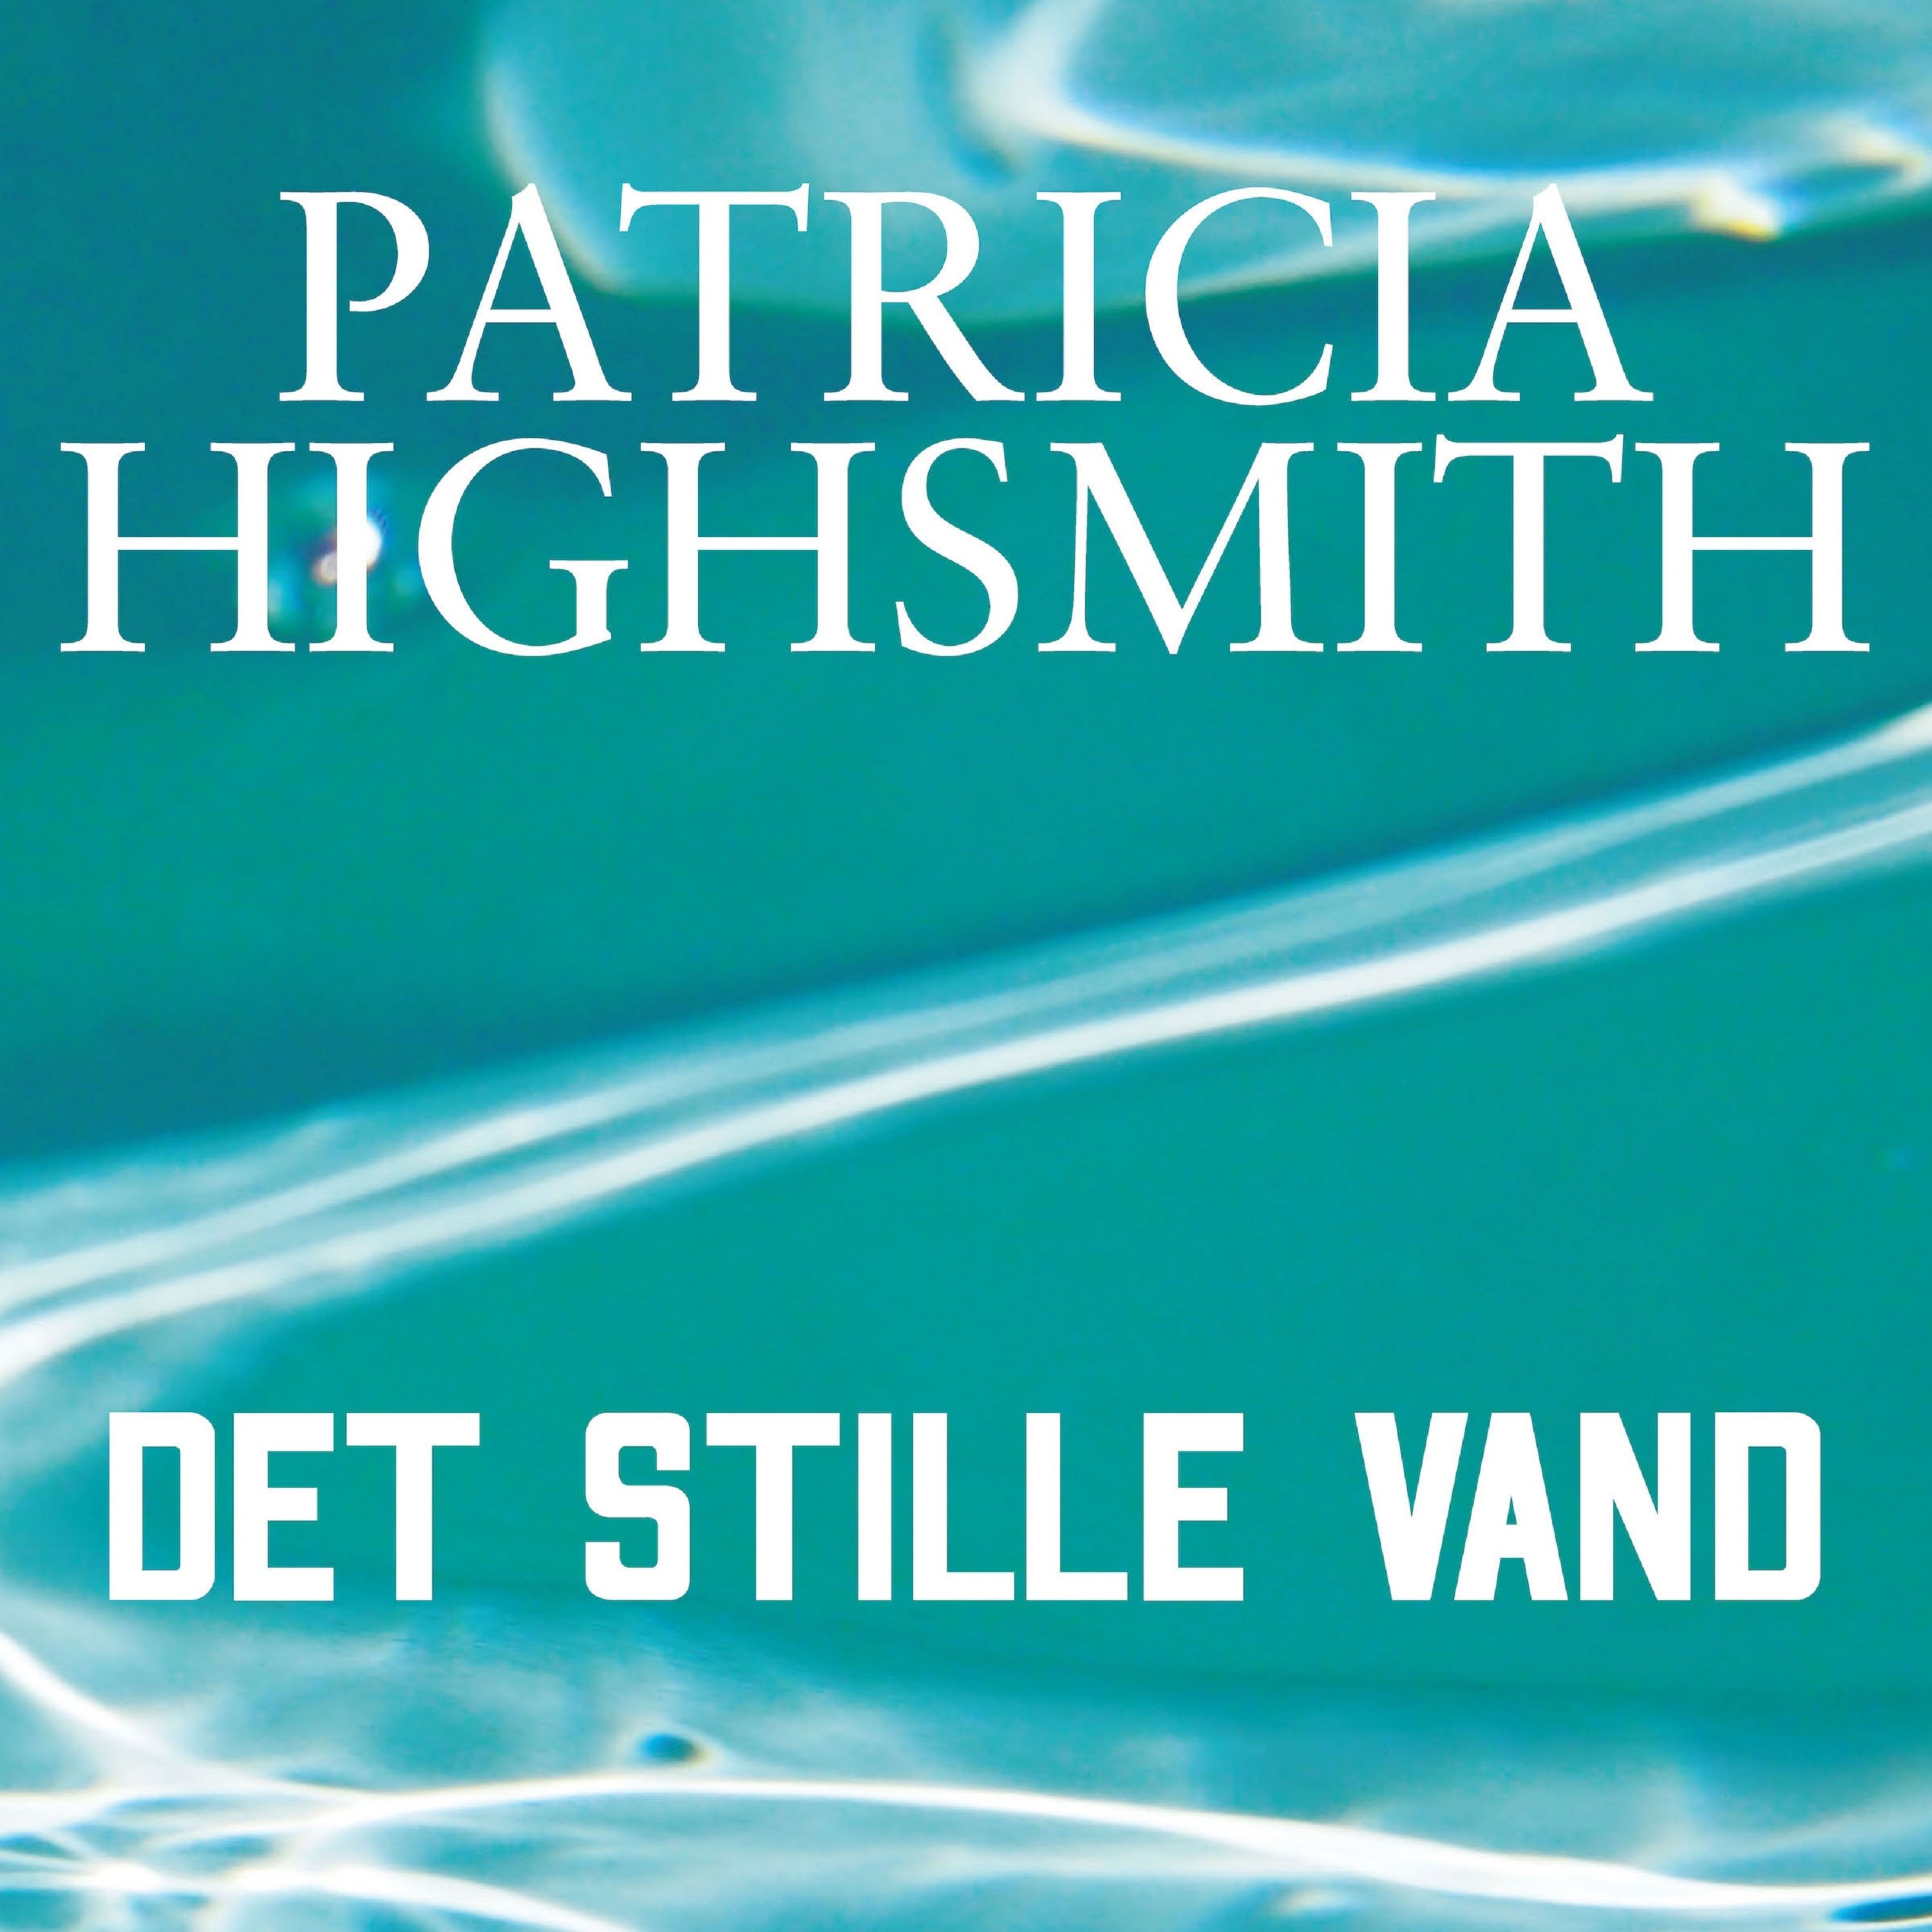 Det stille vand, ljudbok av Patricia Highsmith